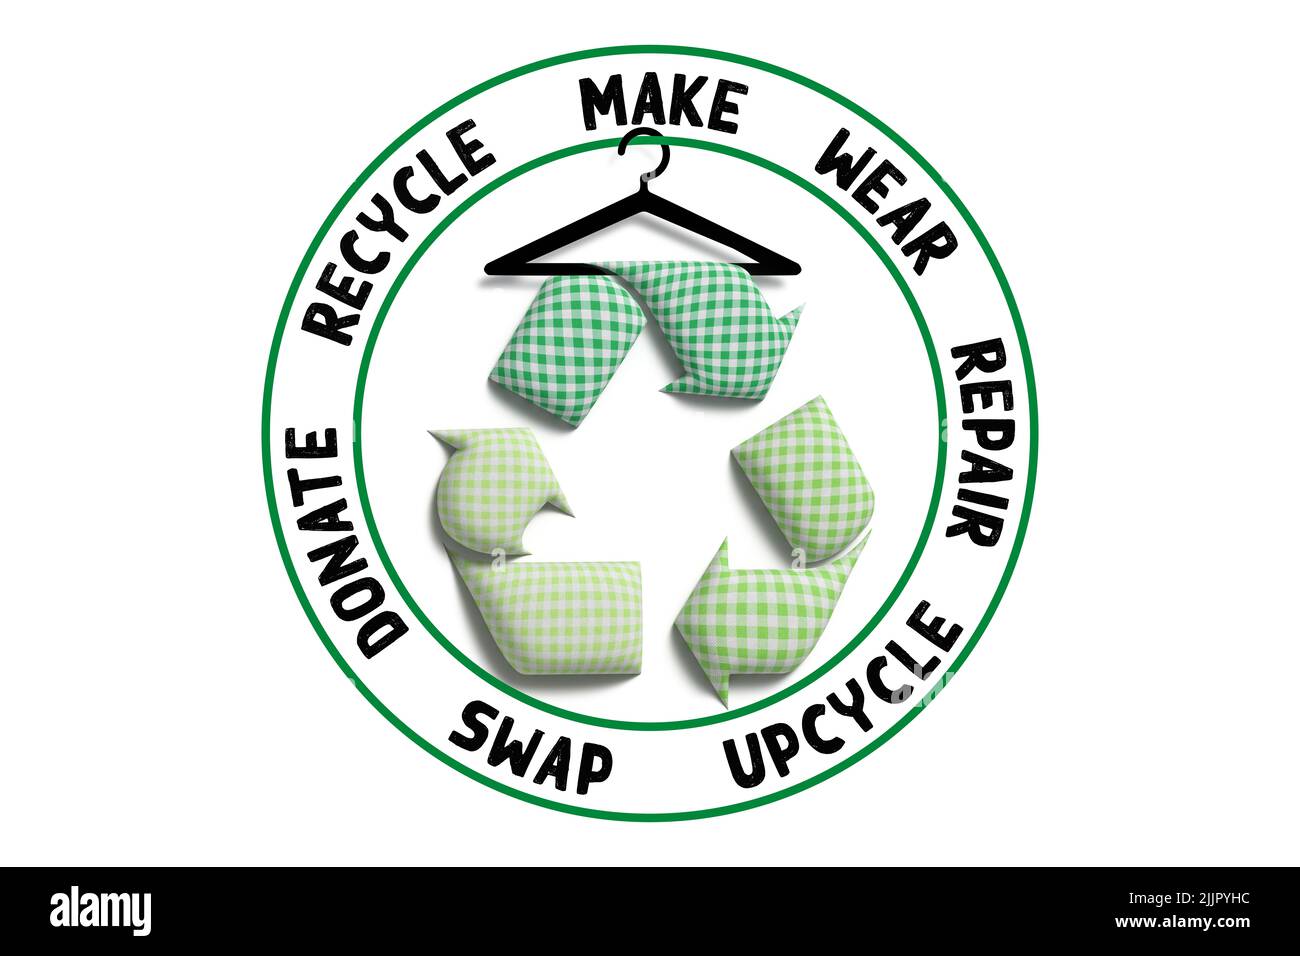 Recicle textiles, recicle la marca de símbolos con tela reciclada, reduzca los residuos textiles y promueva la moda sostenible Foto de stock